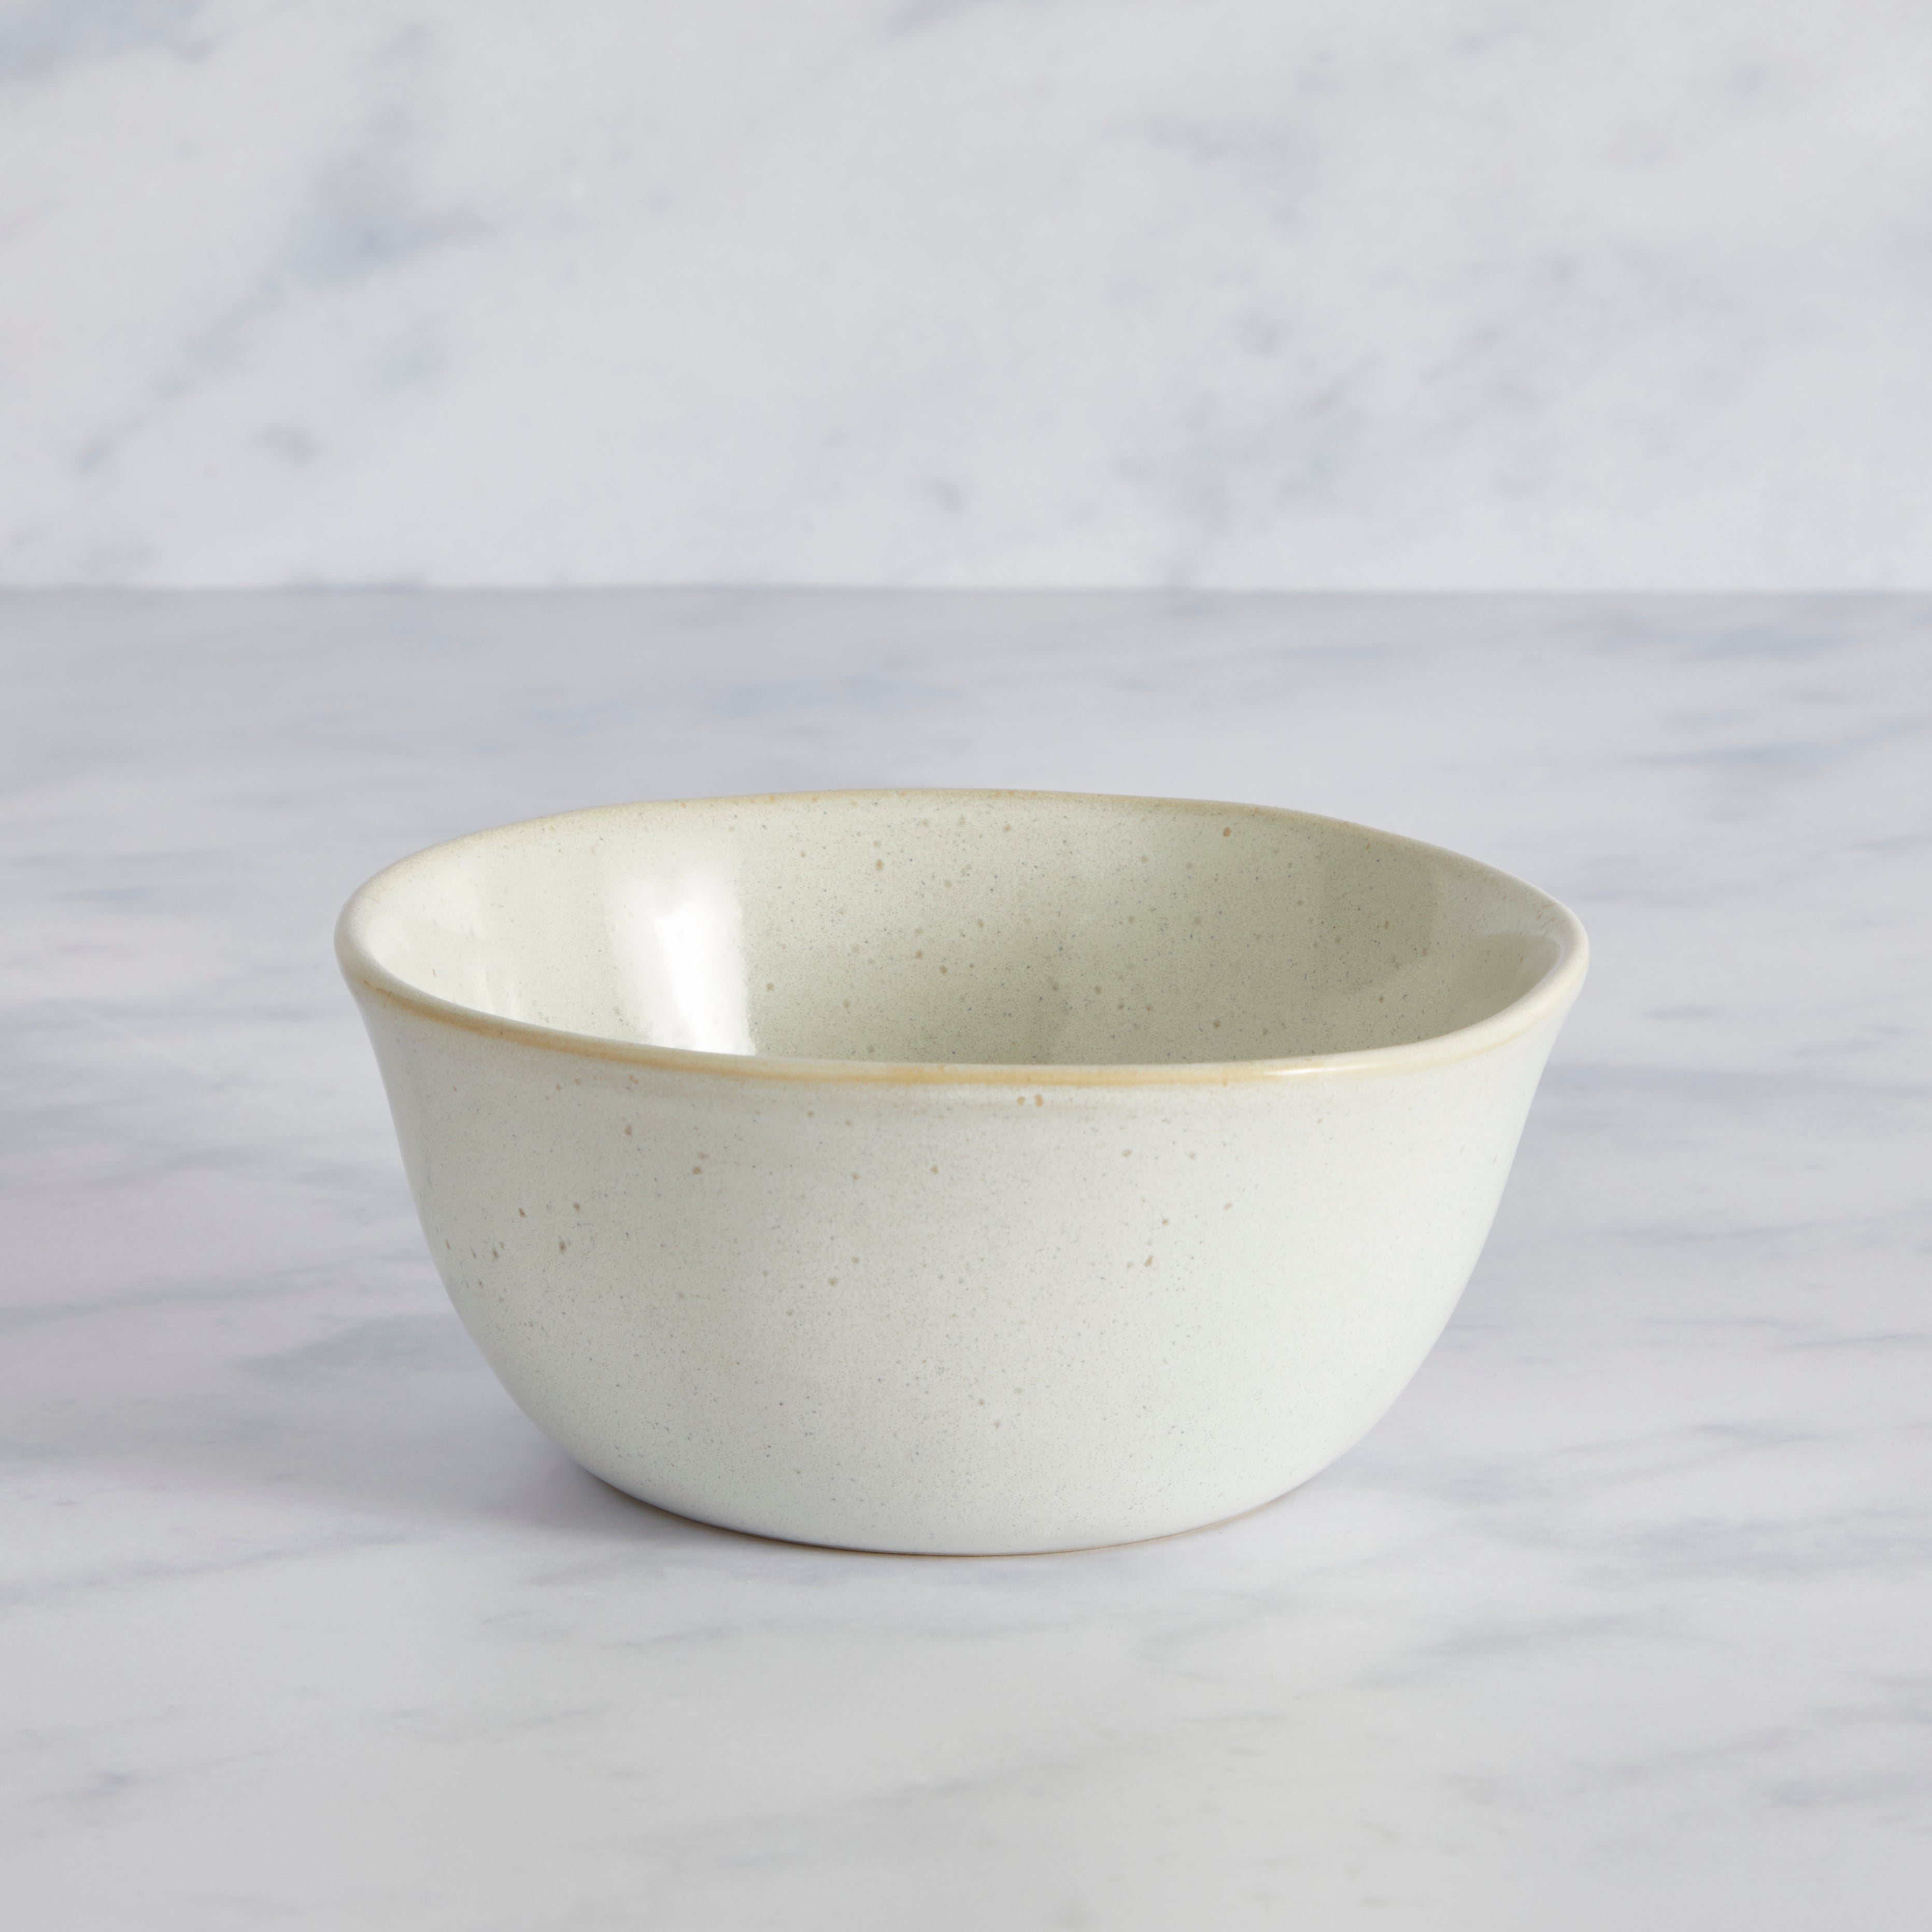 Amalfi Reactive Glaze Stoneware Cereal Bowl White White